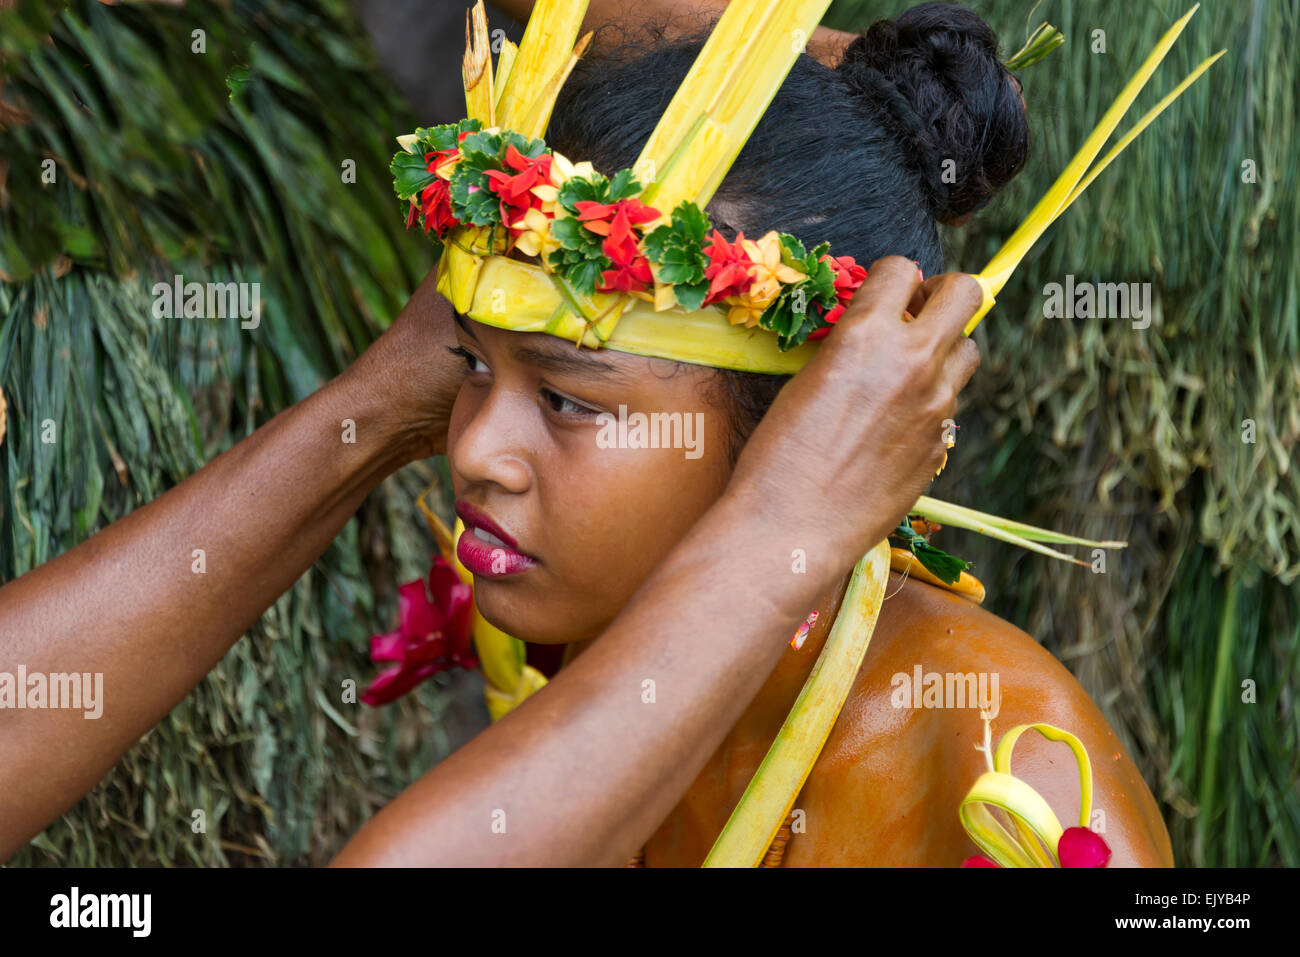 Yapesen Vorbereitung auf Yap Day Festival, Insel Yap, Föderierte Staaten von Mikronesien Stockfoto